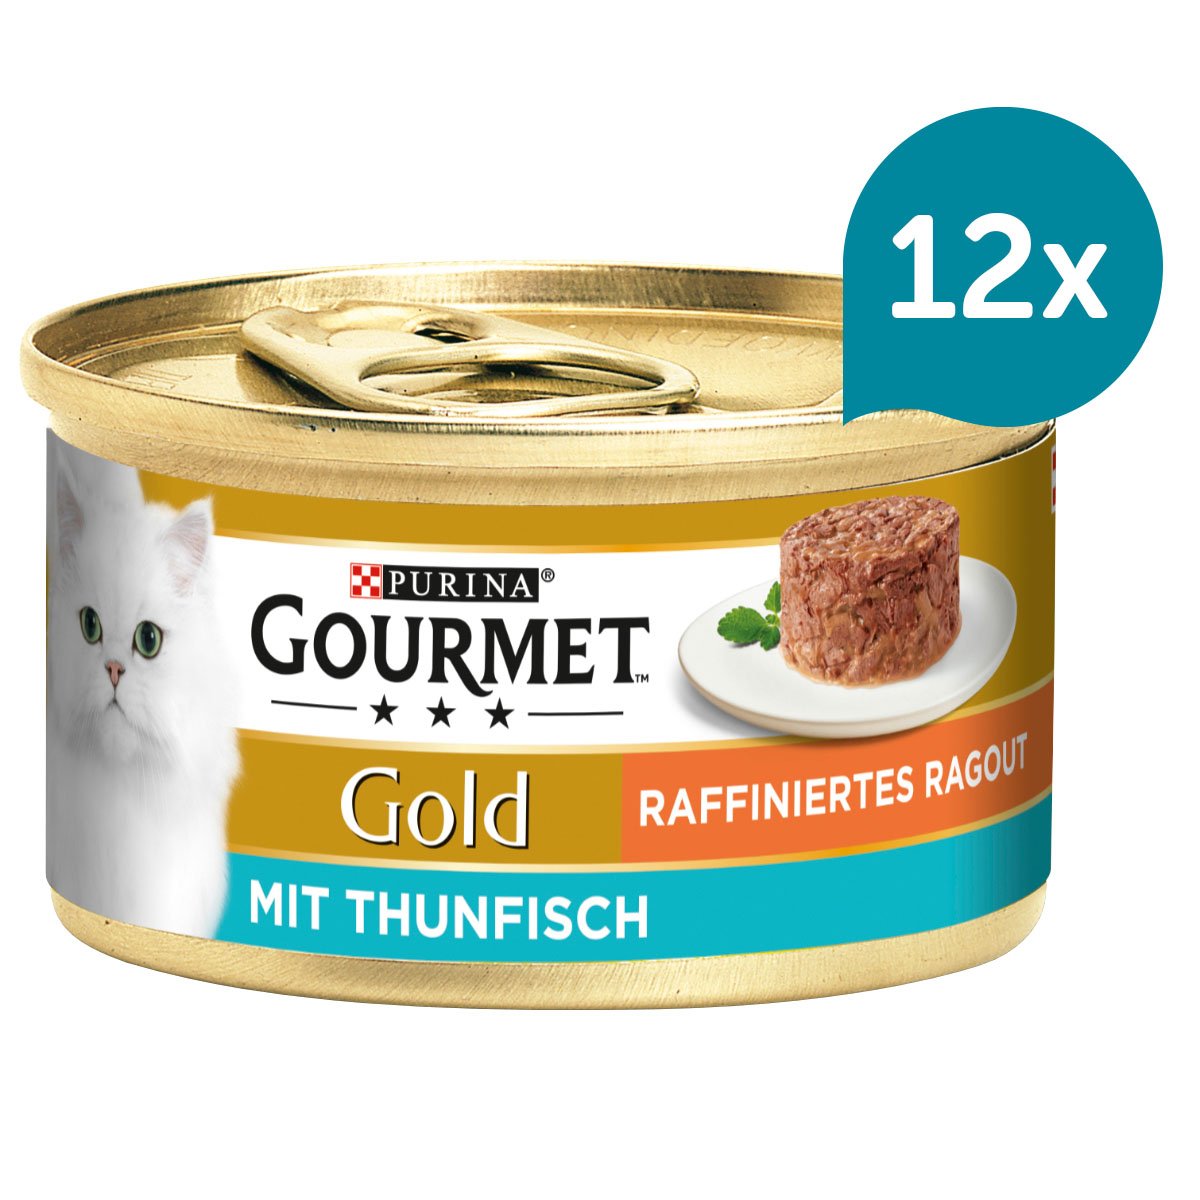 GOURMET Gold Raffiniertes Ragout mit Thunfisch 12x85g